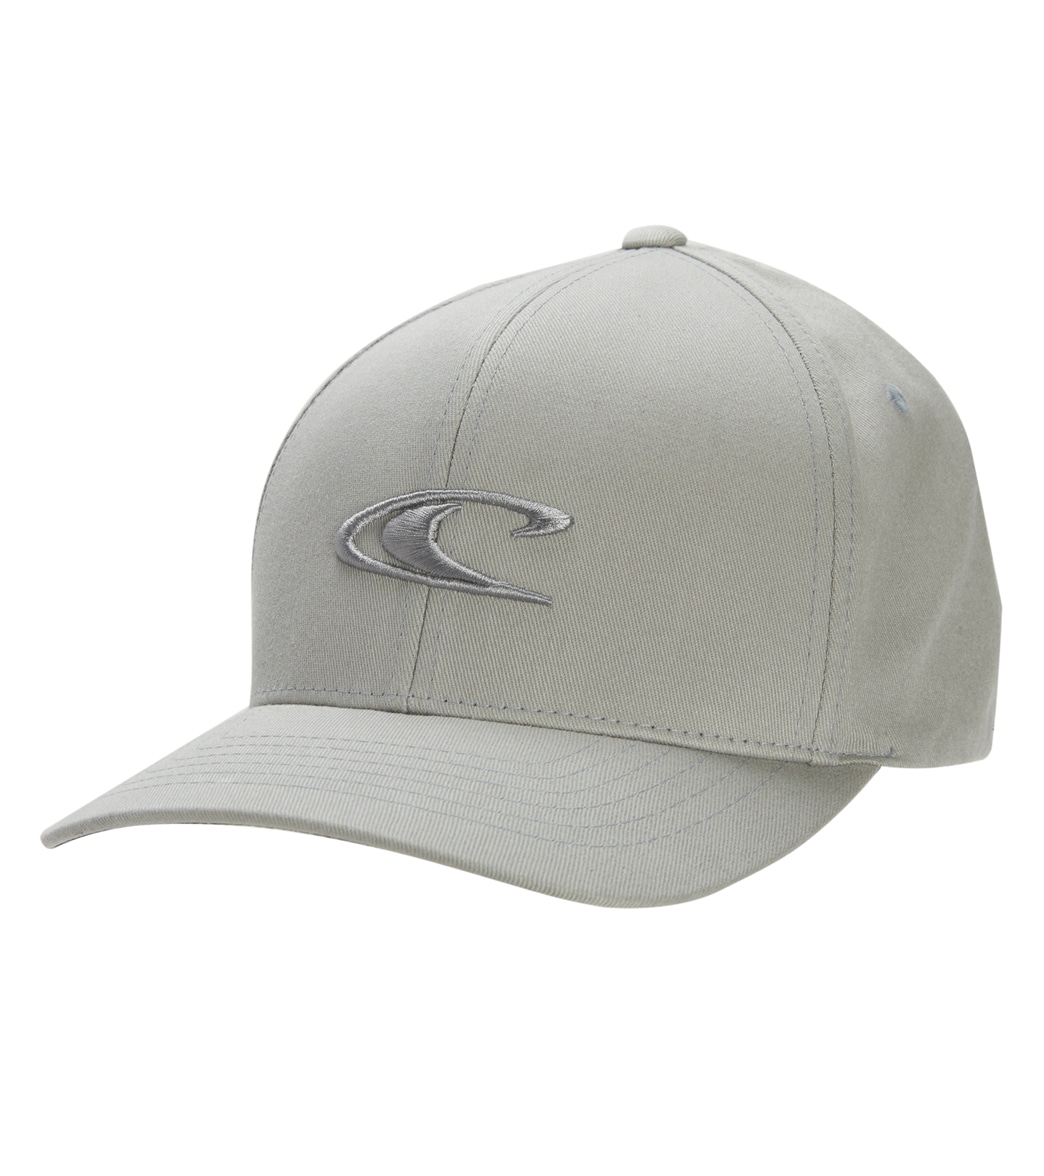 O'neill Men's Clean & Mean Hat - Light Grey2 Large/Xl Cotton - Swimoutlet.com